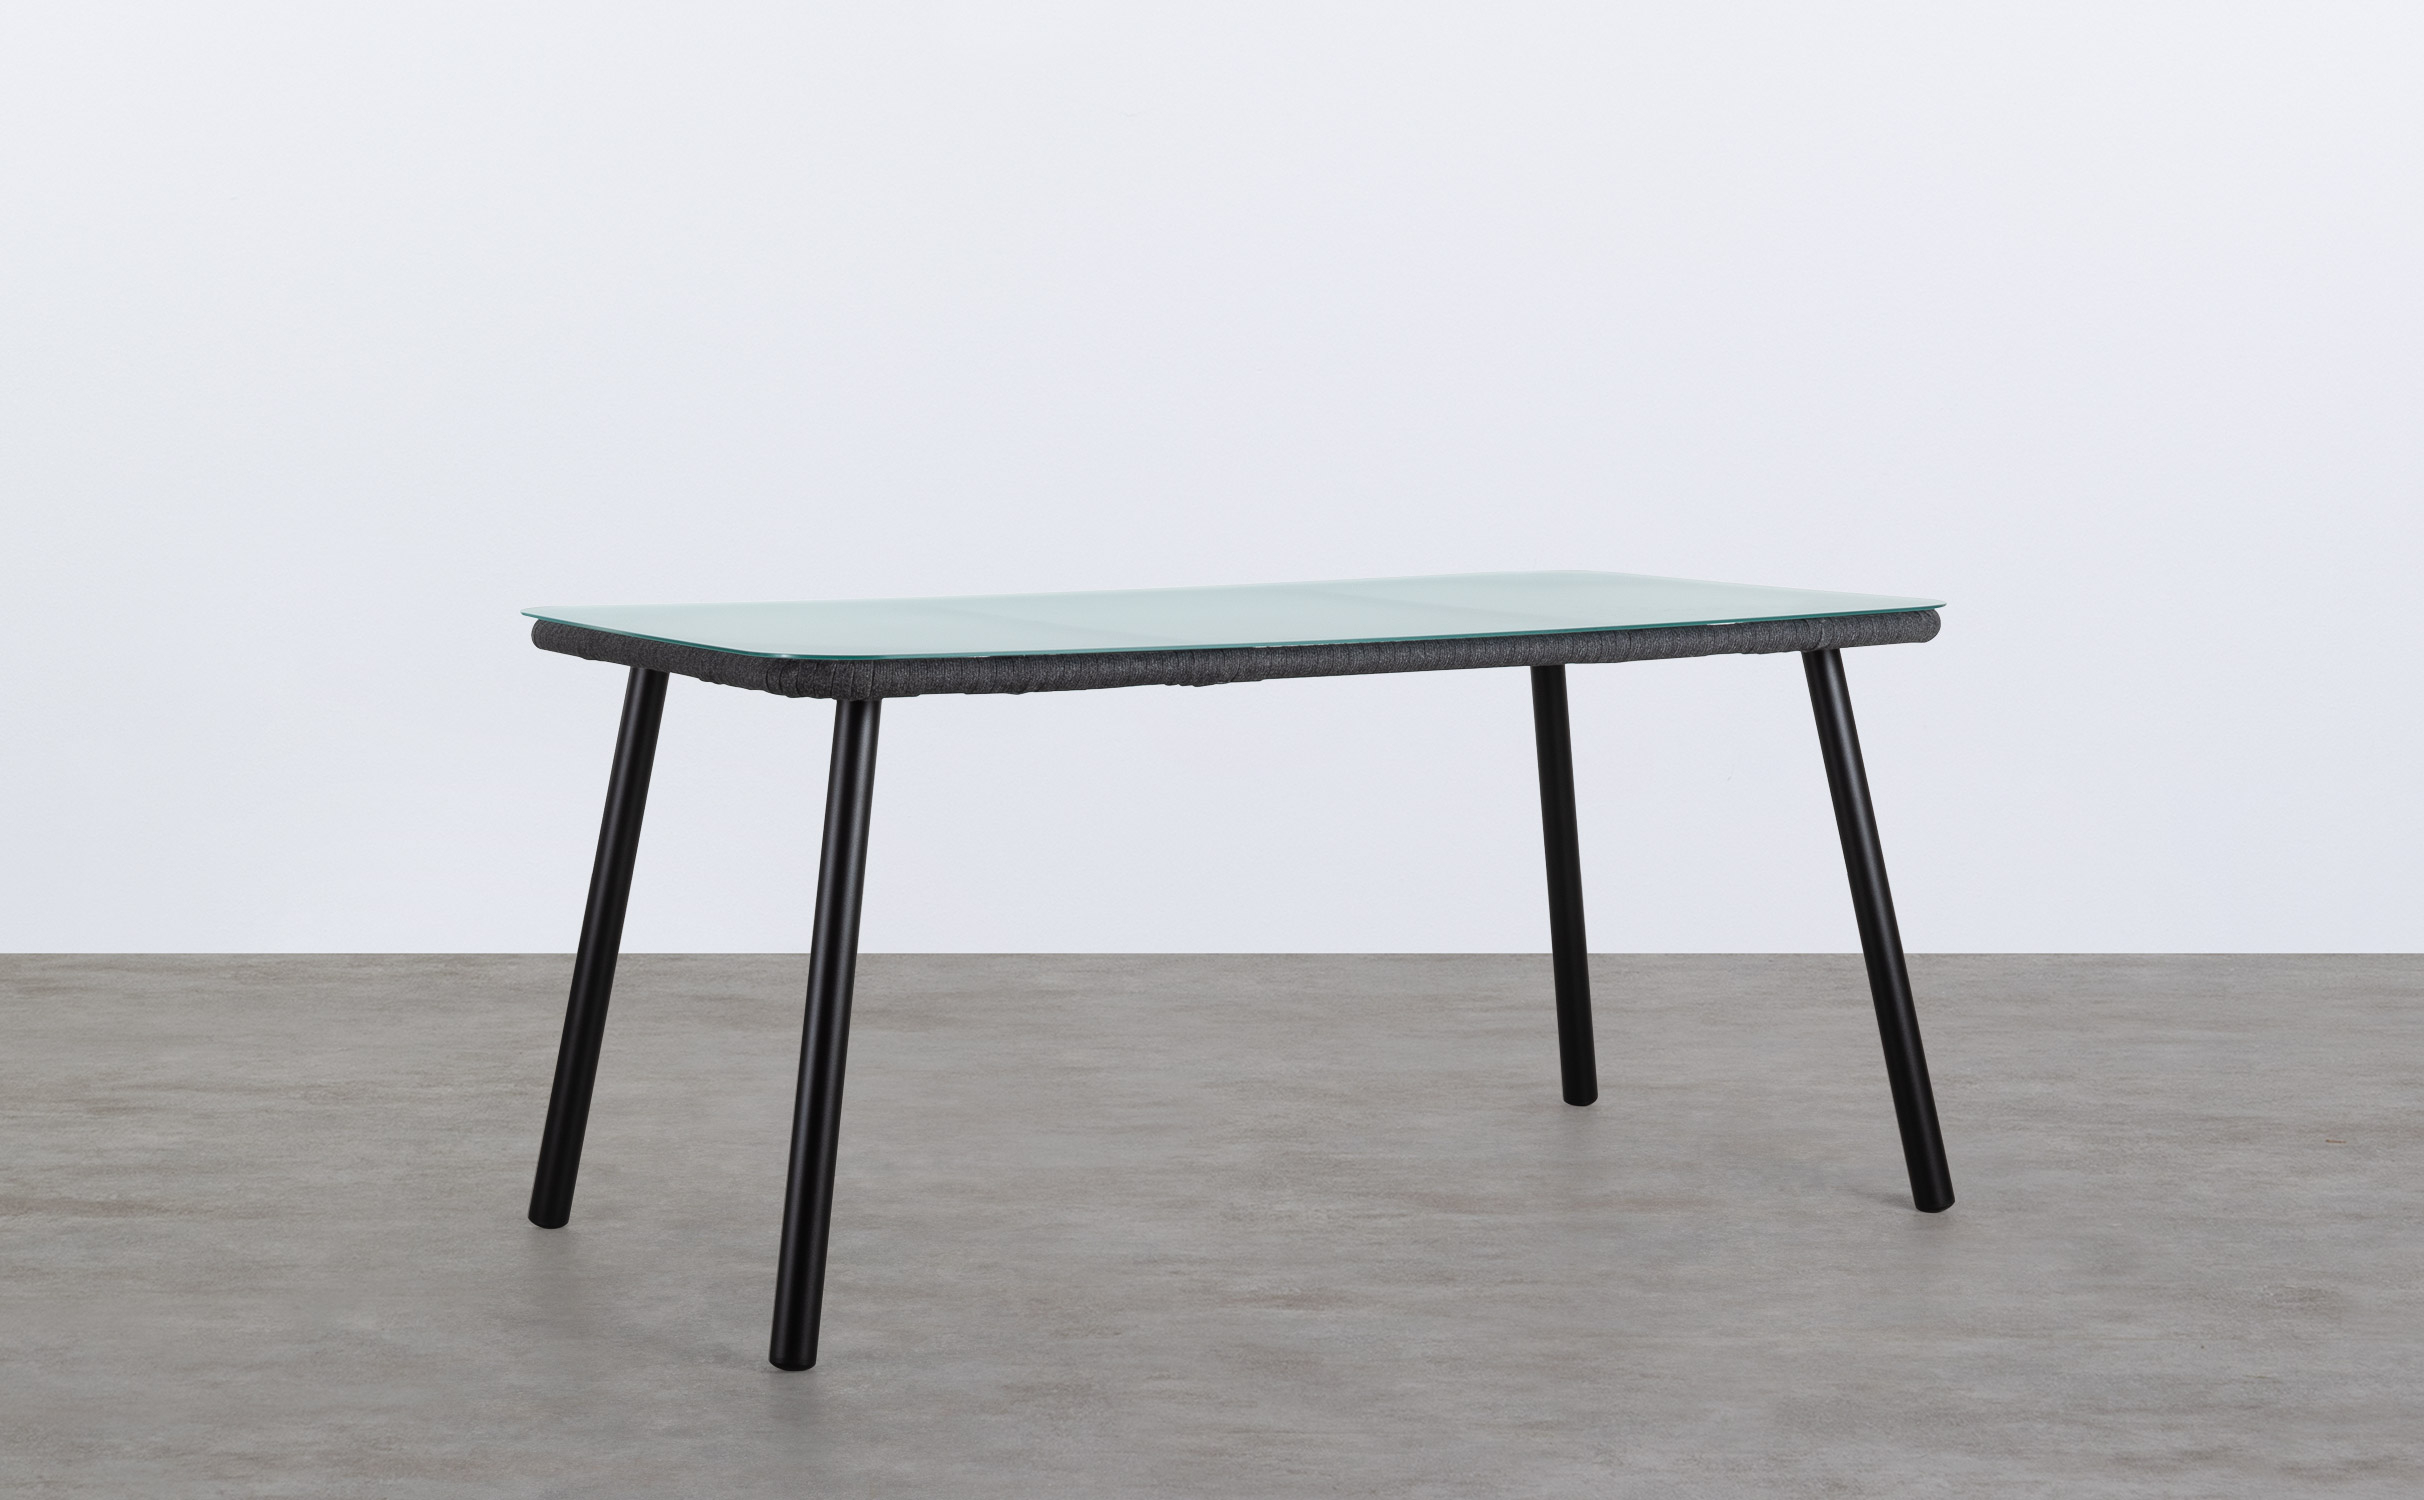 Tavolo da Esterno Rettangolare in Alluminio e Cristallo (160x90 cm) Drian, immagine della galleria 1